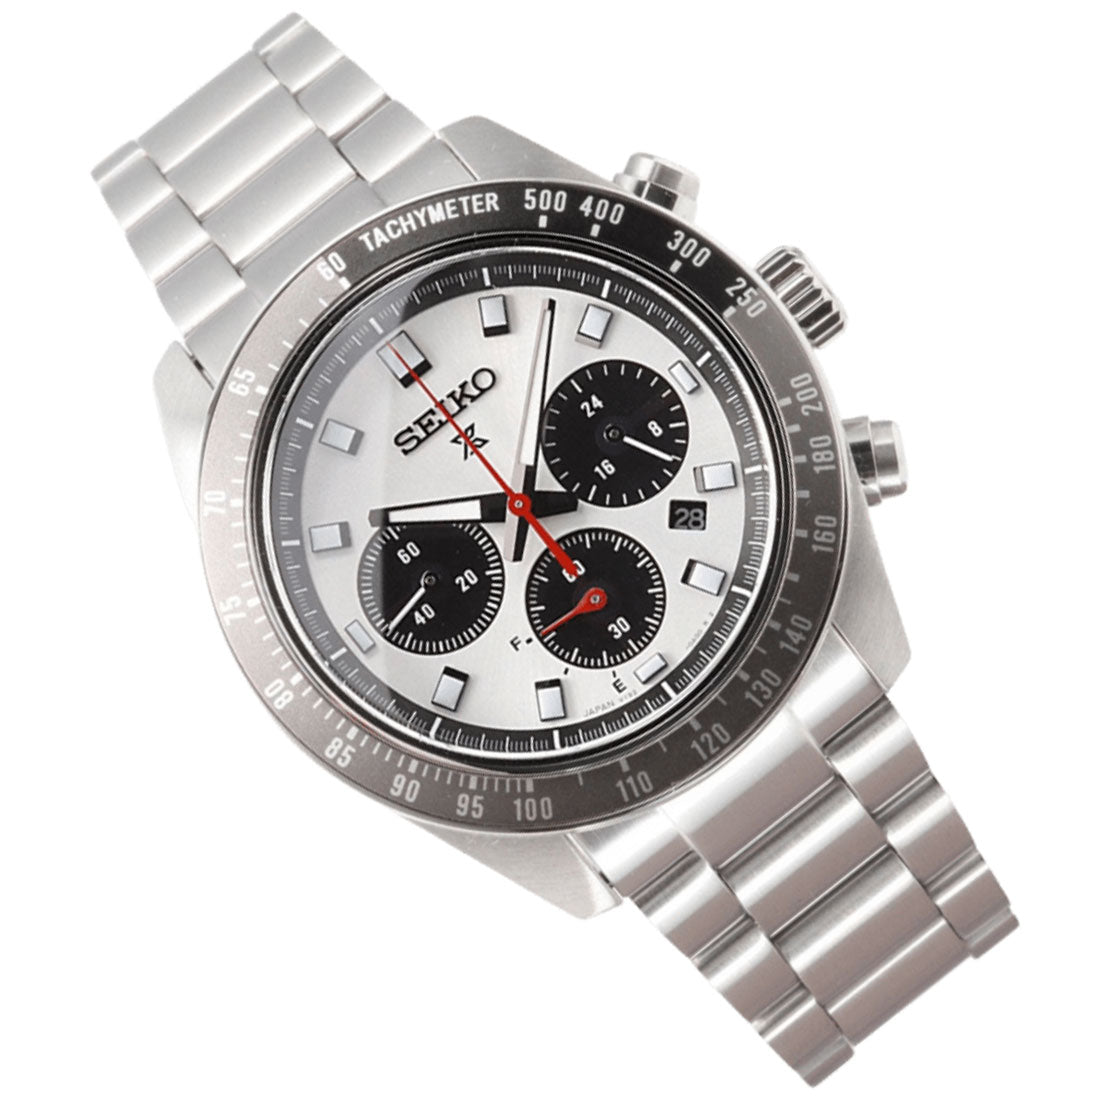 Seiko Panda Prospex SpeedTimer SBDL095 Chronograph Stopwatch Solar Watch -Seiko